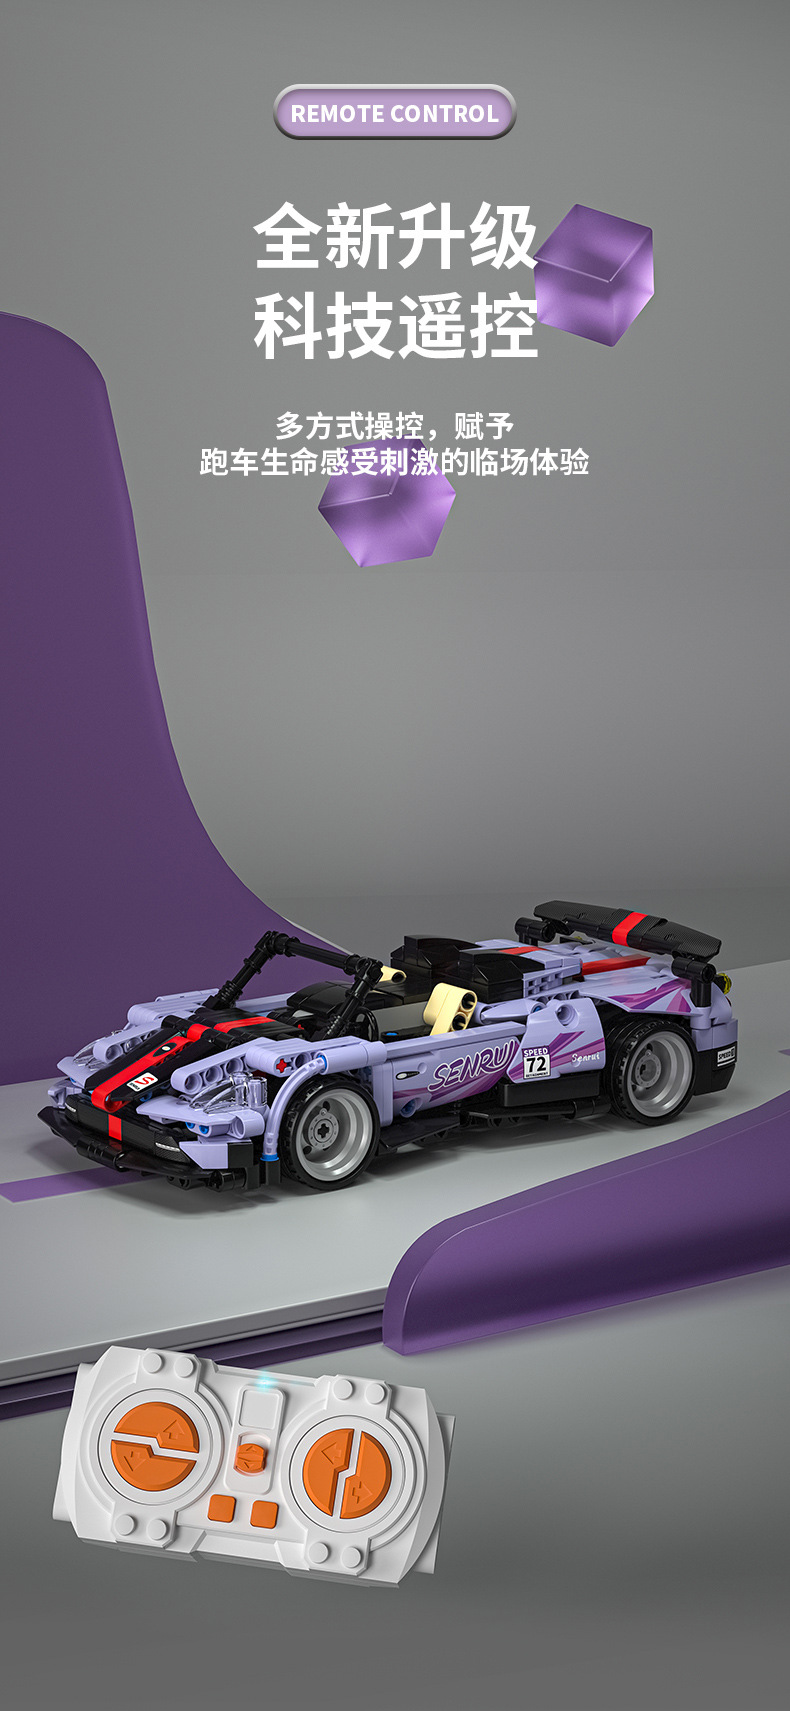 SEMBO 701908 Remote Control Purple Fengshen Sports Car